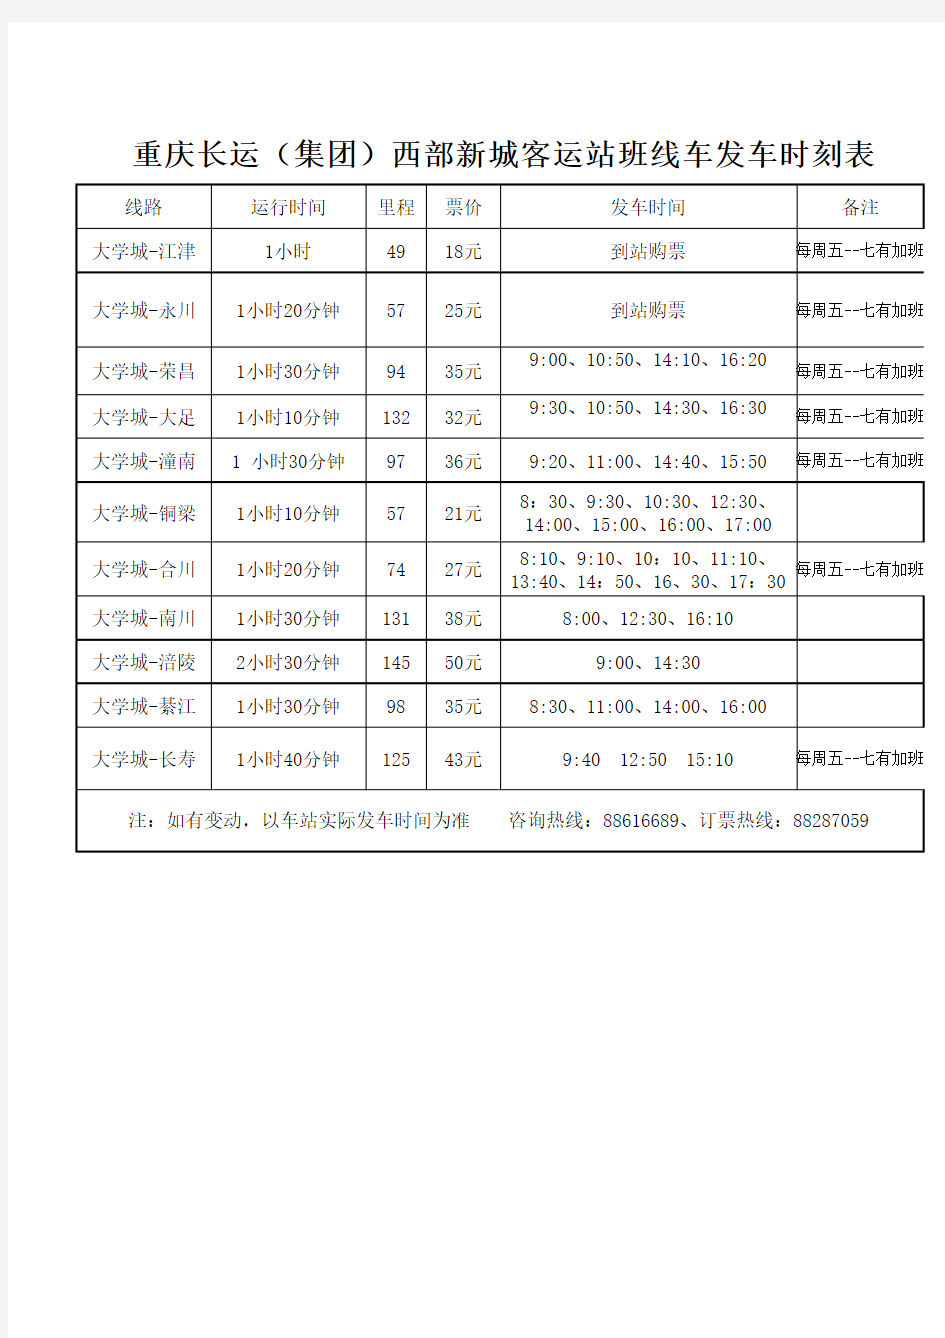 大学城车站发车时刻表(重庆内)